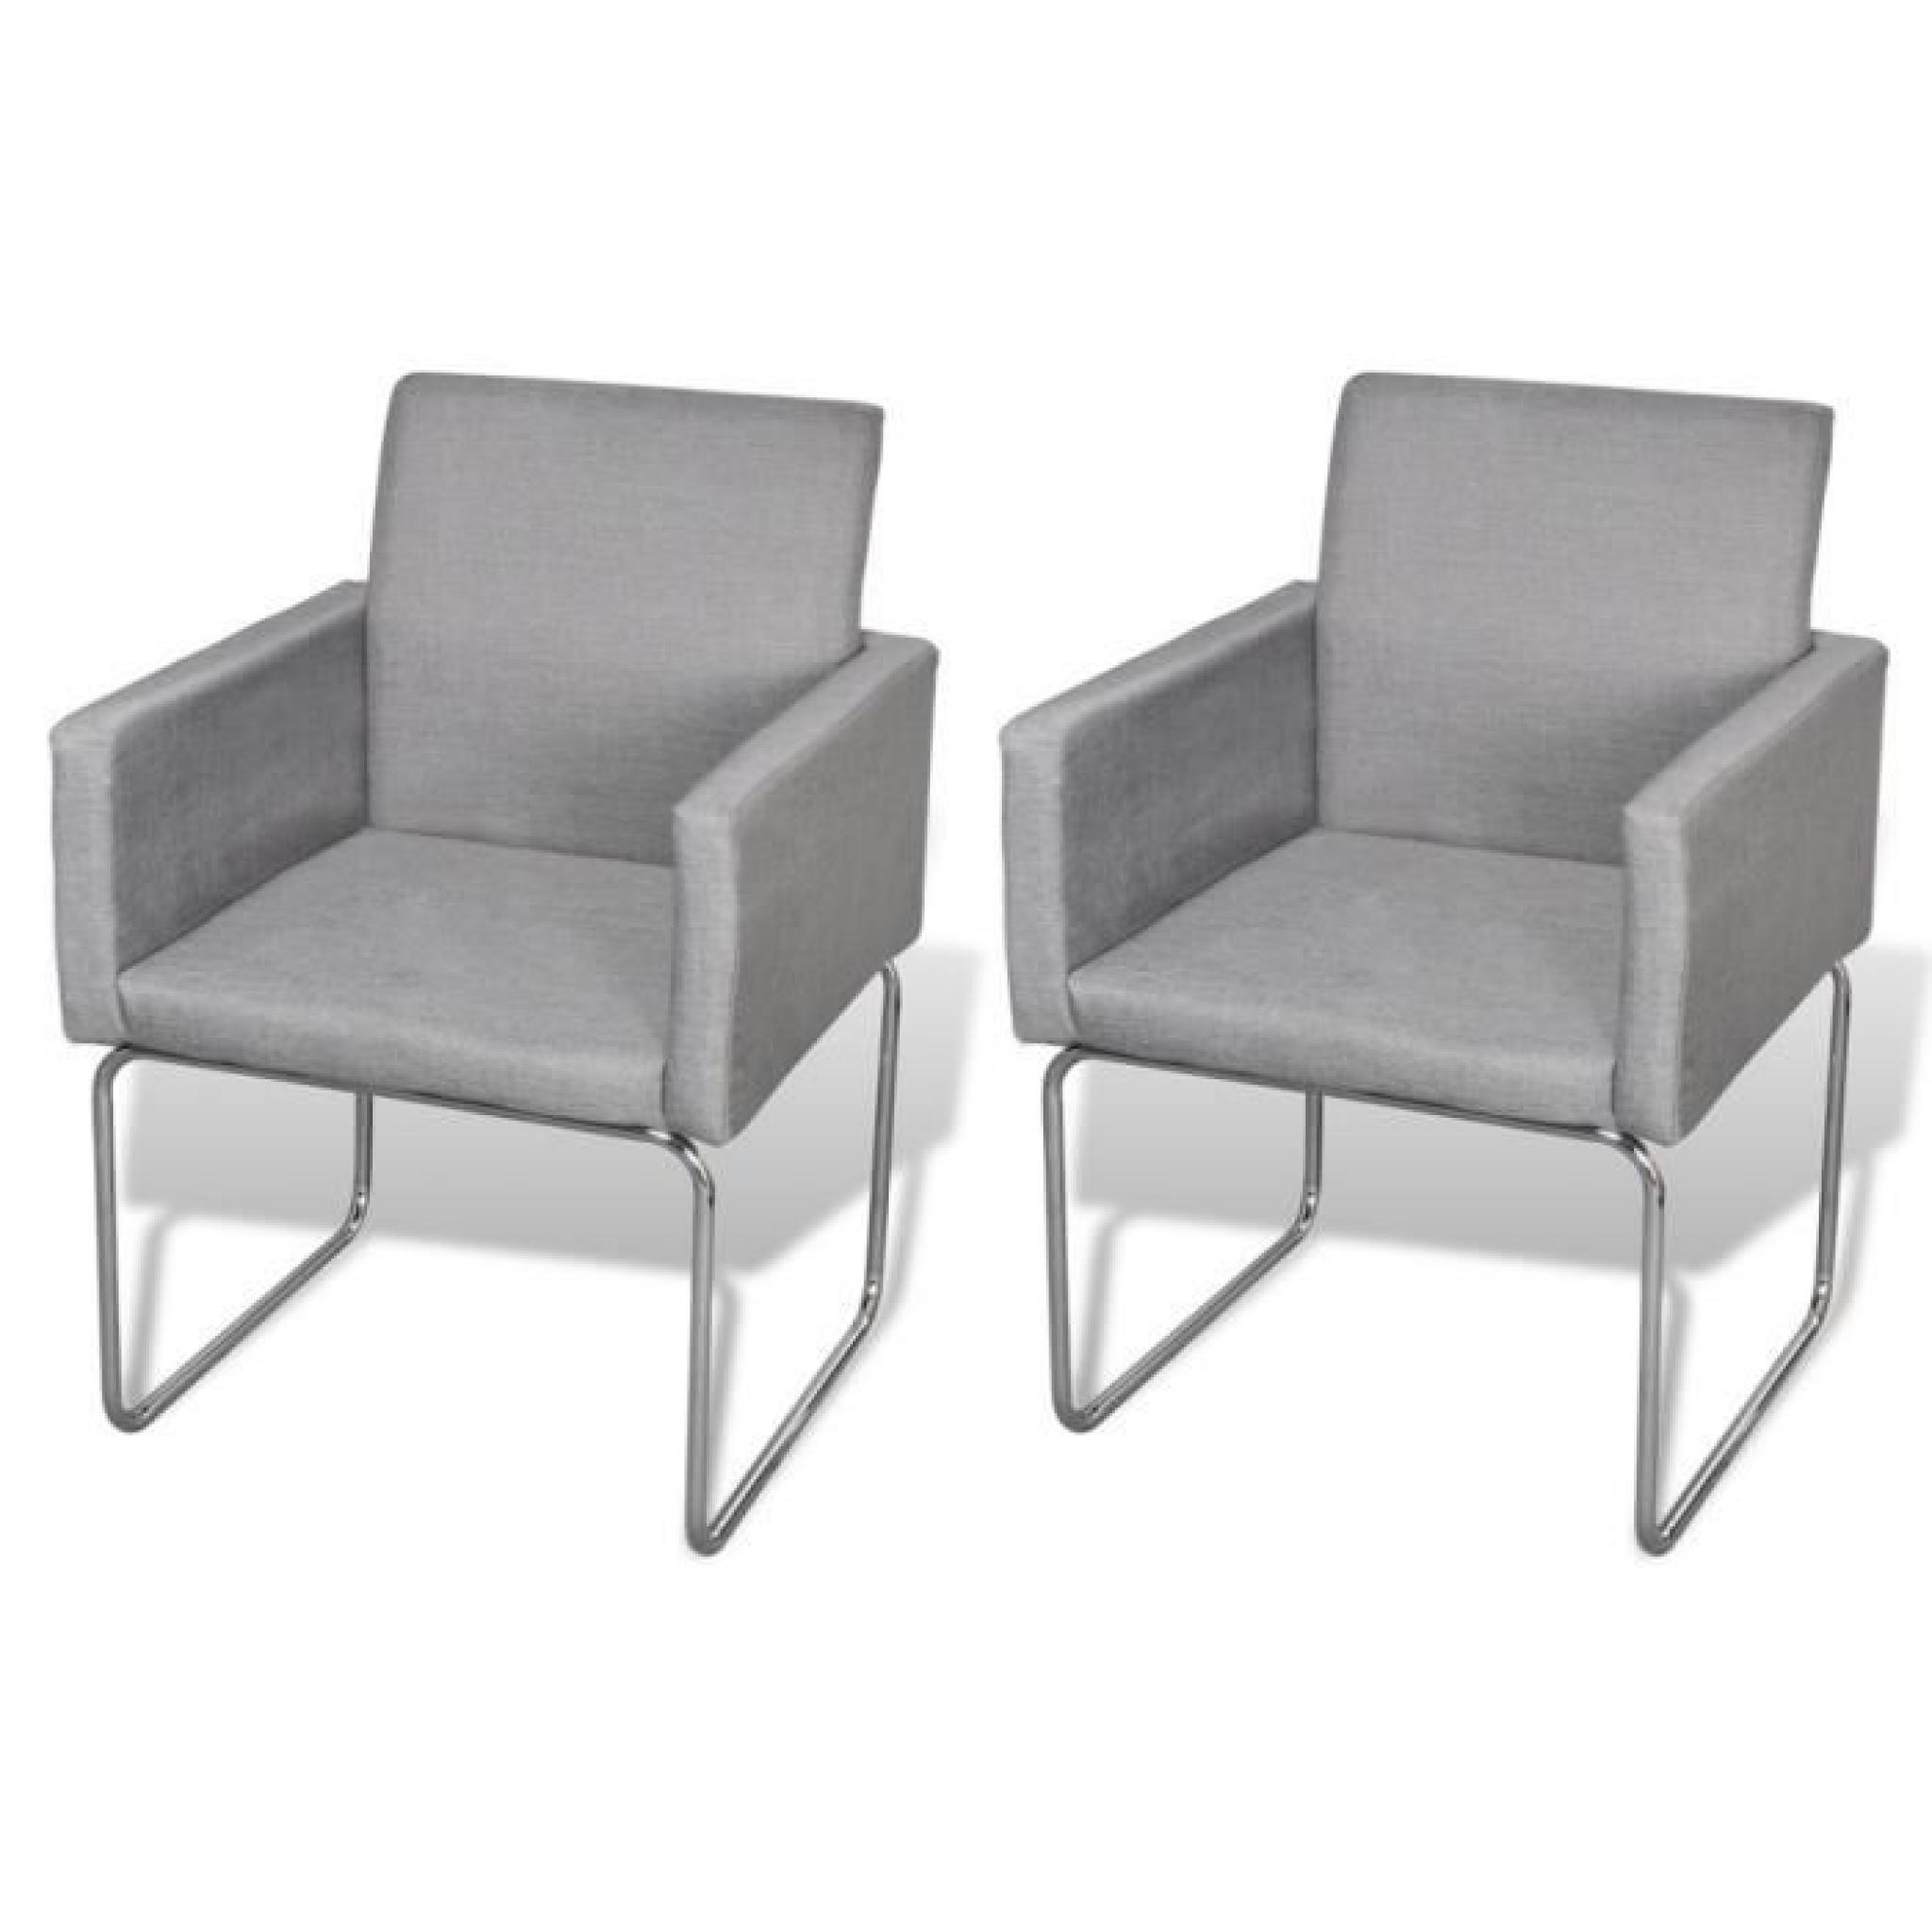 Magnifique Lot de 2 chaises avec accoudoirs gris clair